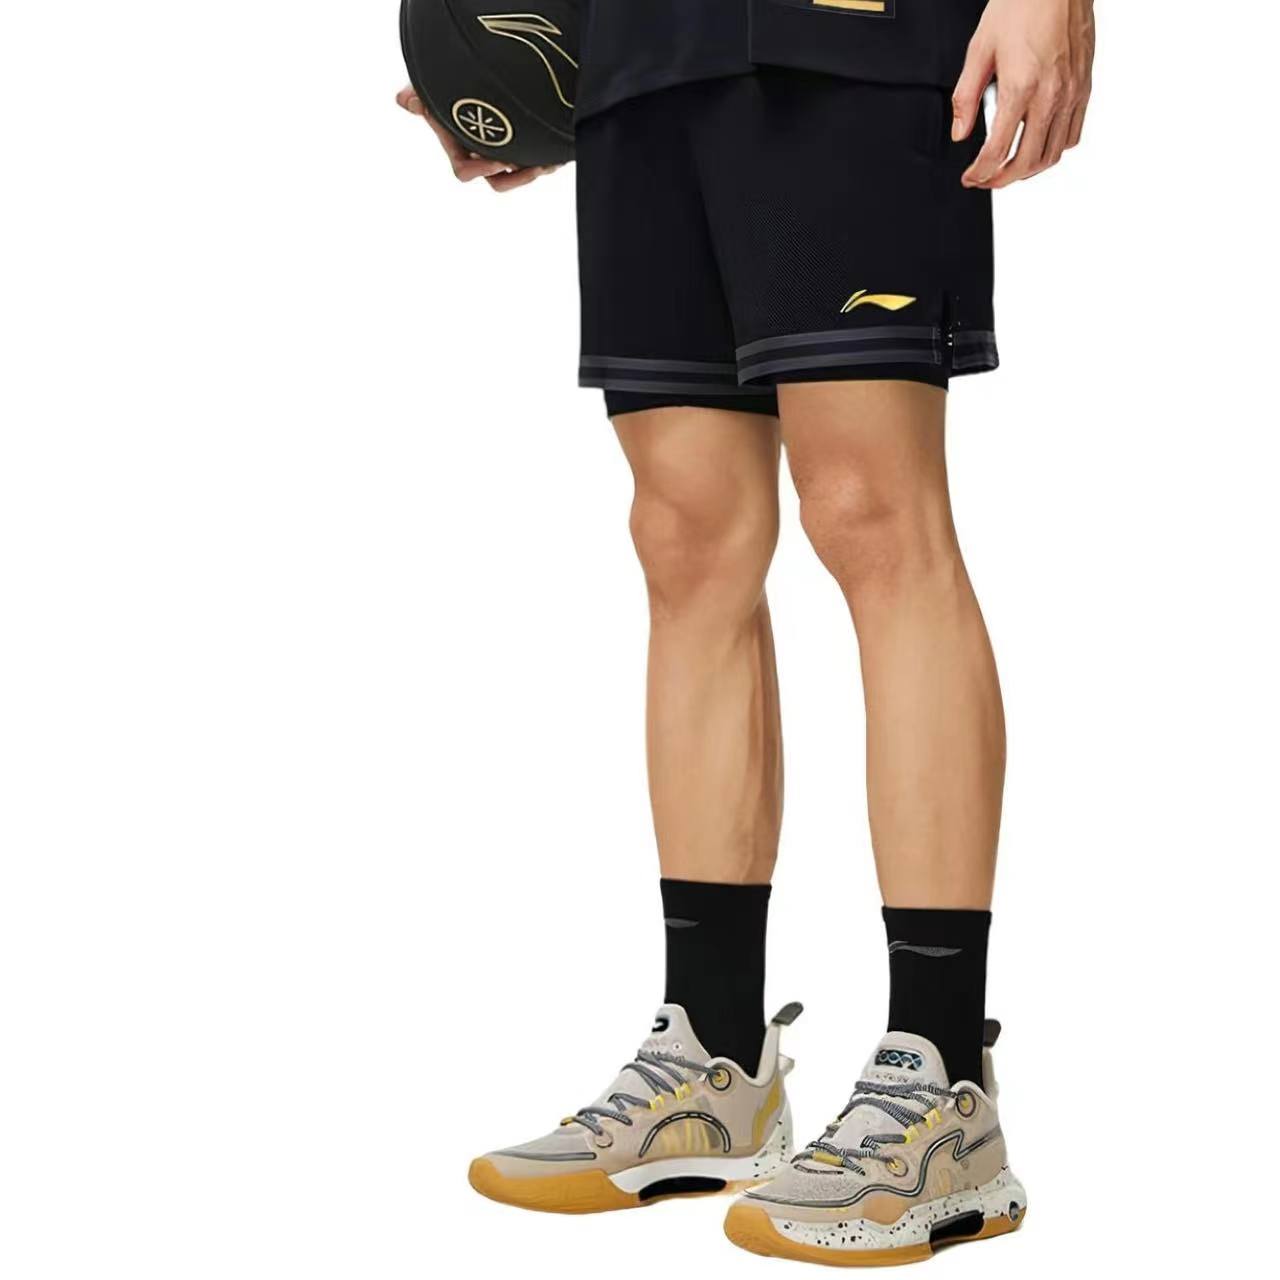 吉米巴特勒李宁篮球比赛裤男士专业篮球系列篮球裤反光针织运动裤